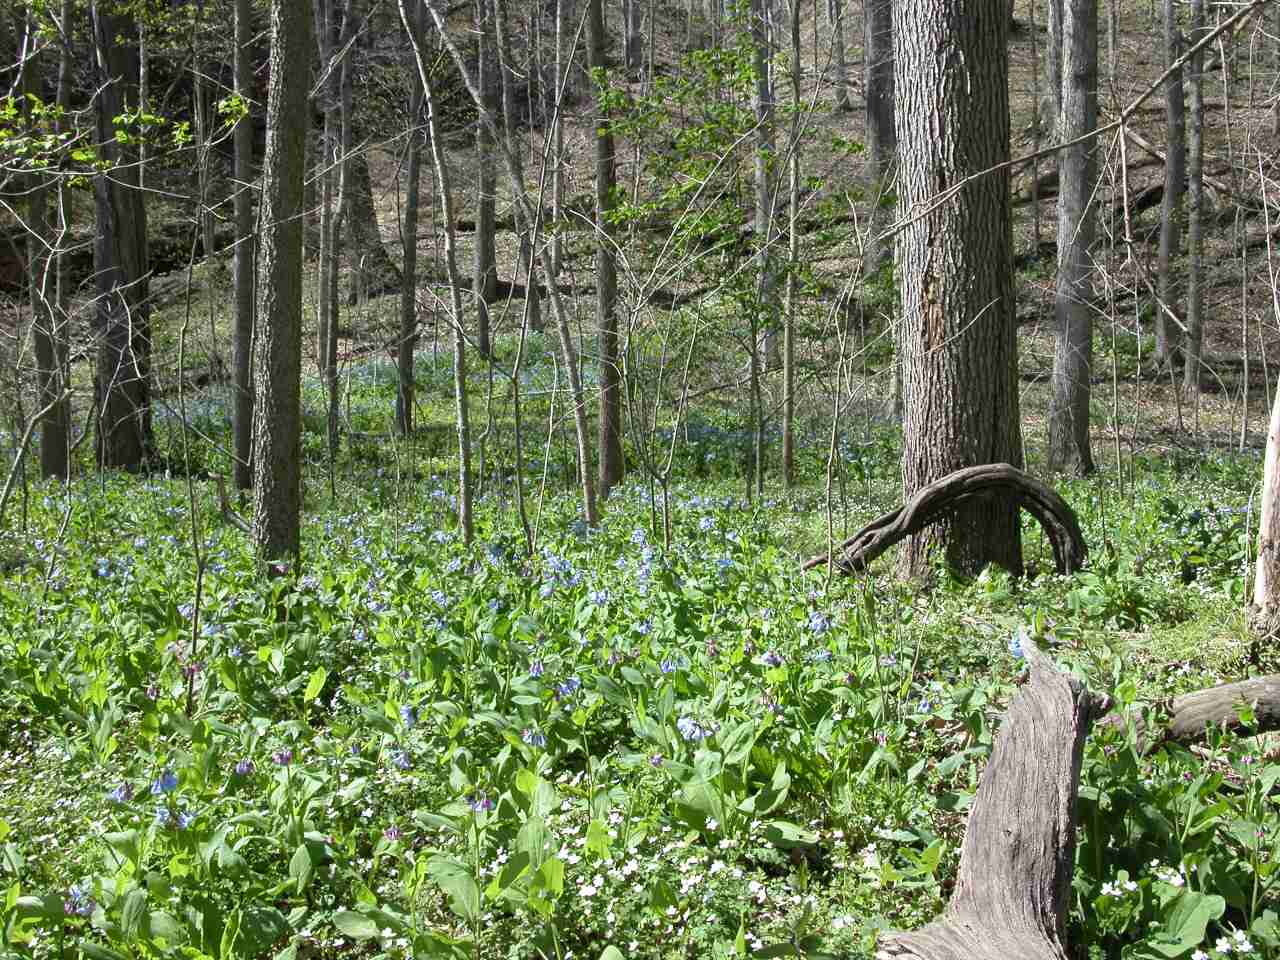 Field of Virignia bluebells